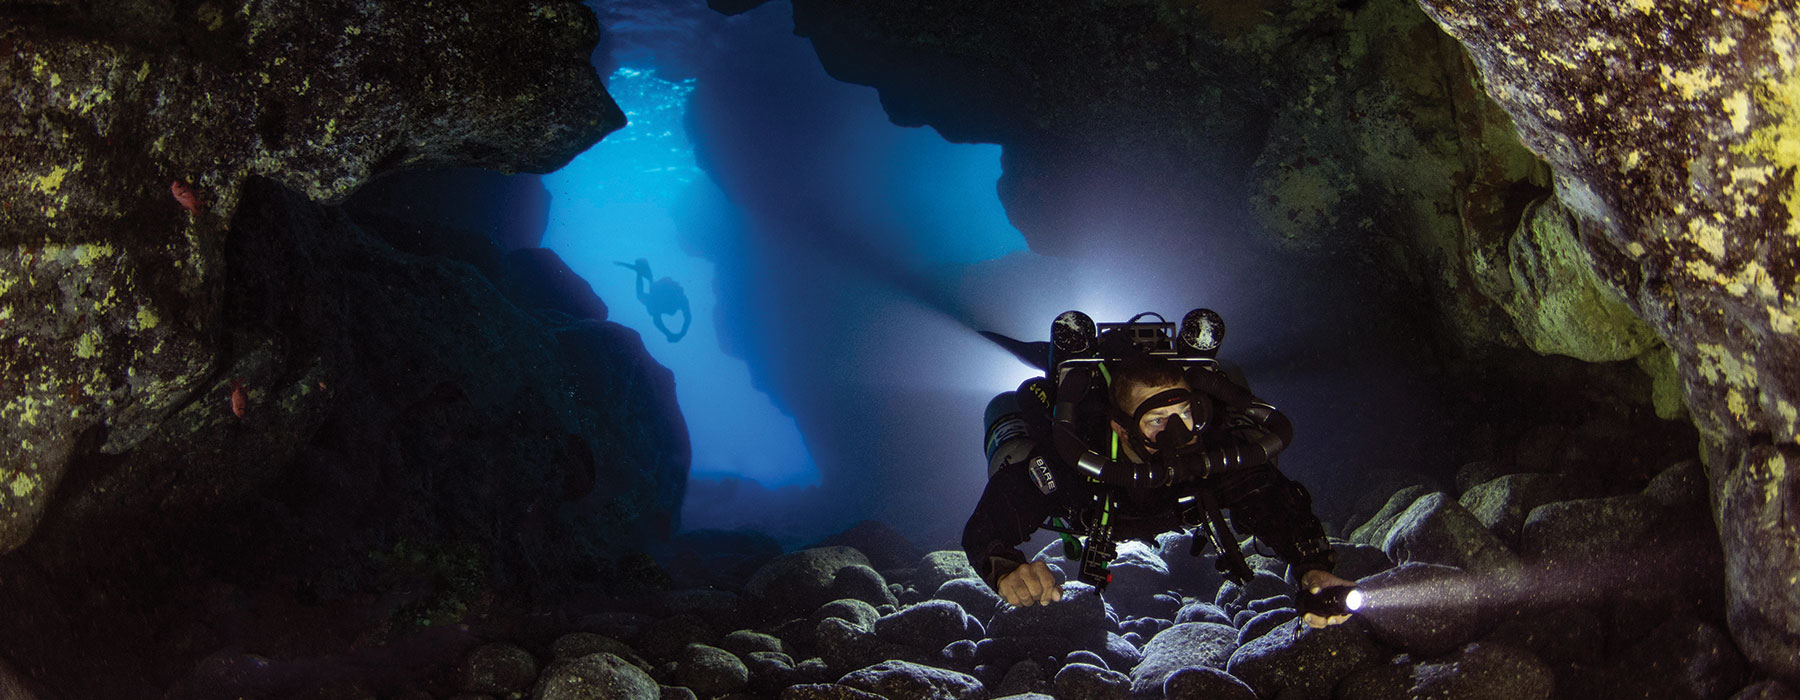 Subwave Underwater Communication